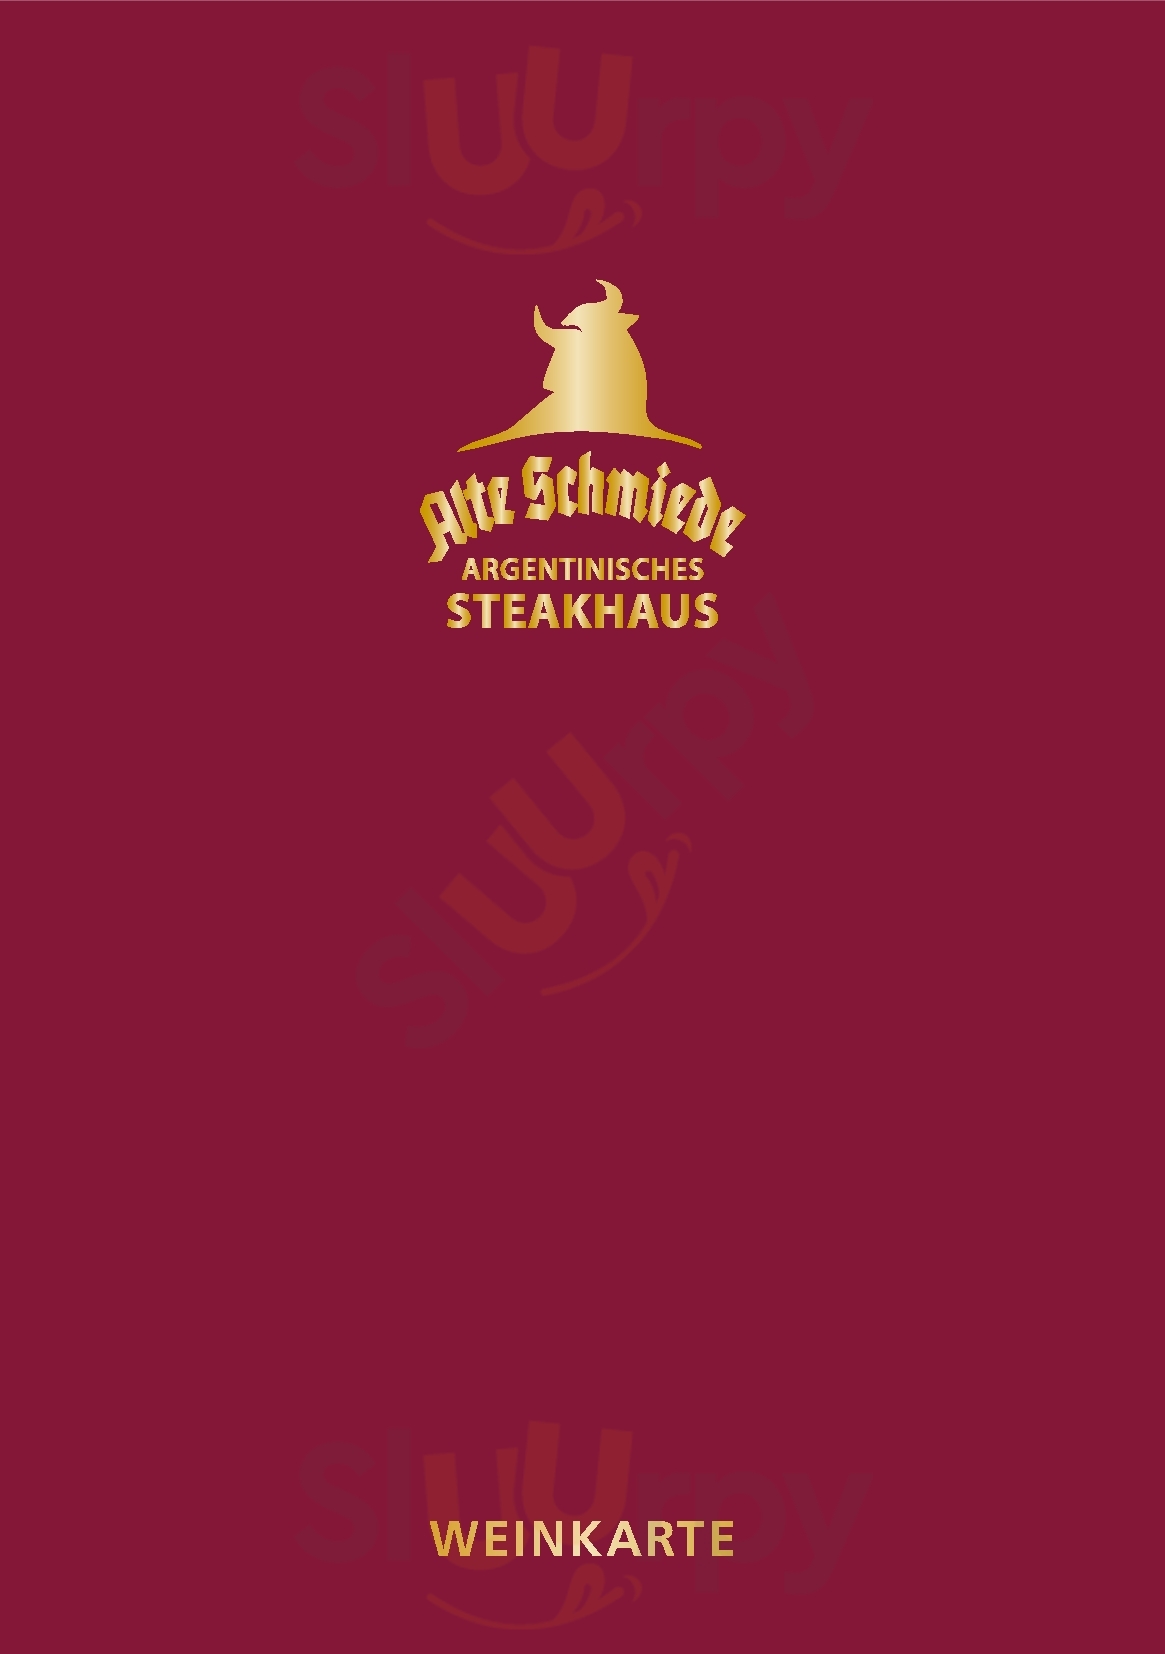 Alte Schmiede - Argentinisches Steakhouse Bonn Menu - 1